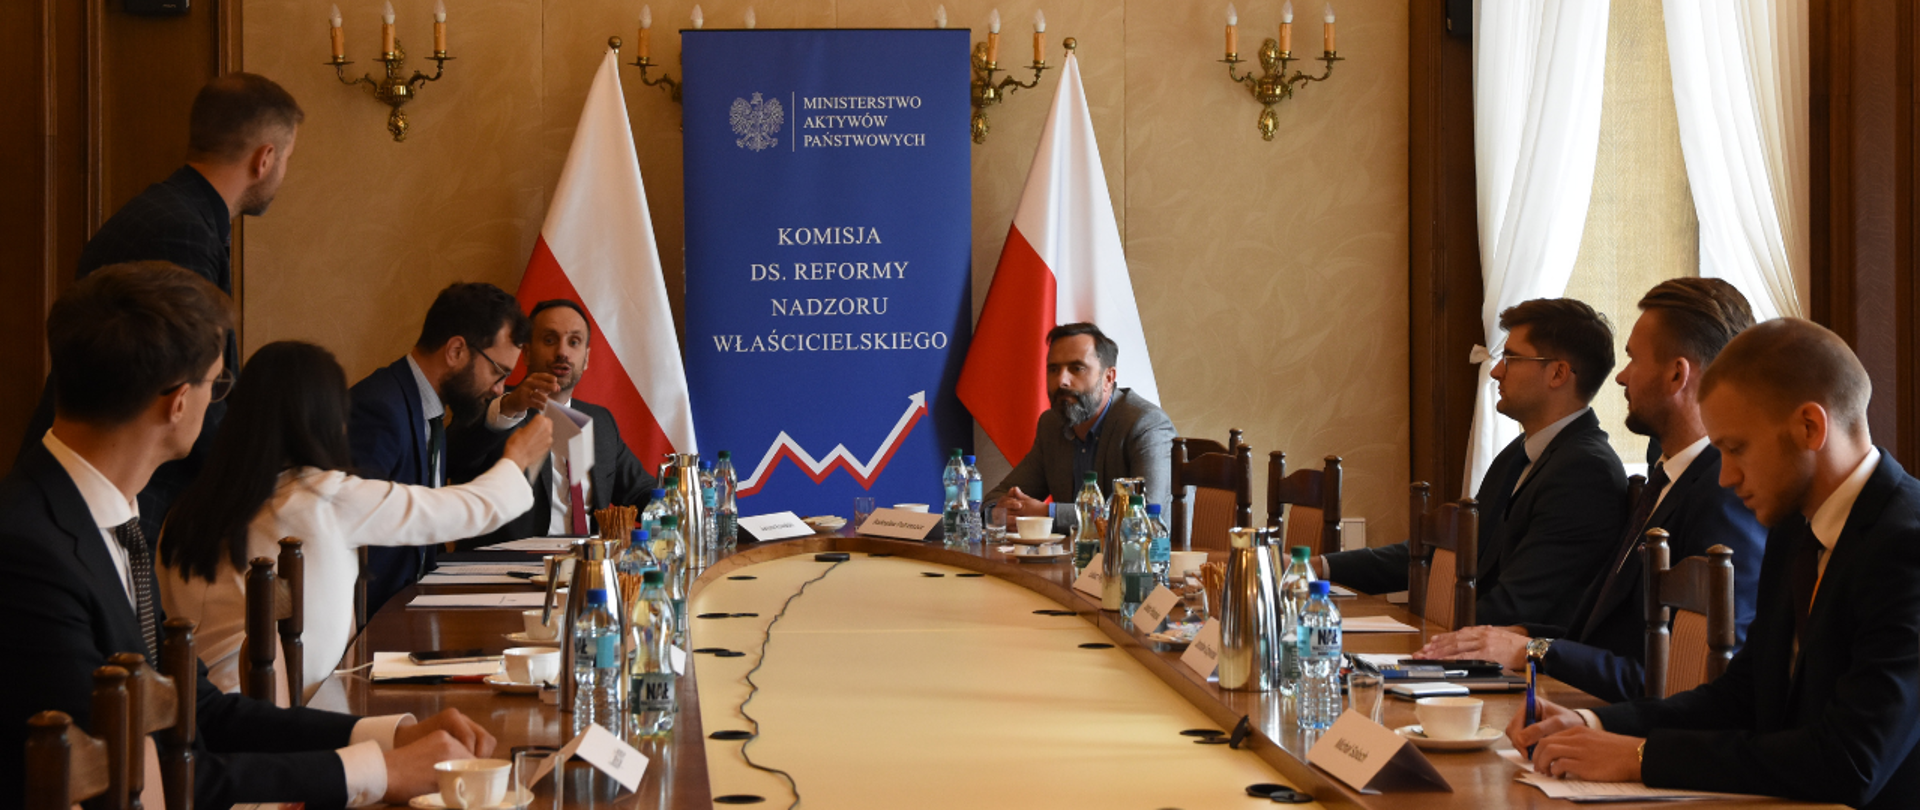 Uczestnicy spotkania siedzą przy owalnym stole. Wśród nich minister Janusz Kowalski. W tle ścianka z logotypami MAP i Komisji ds. Nadzoru Właścicielskiego oraz dwie flagi Polski